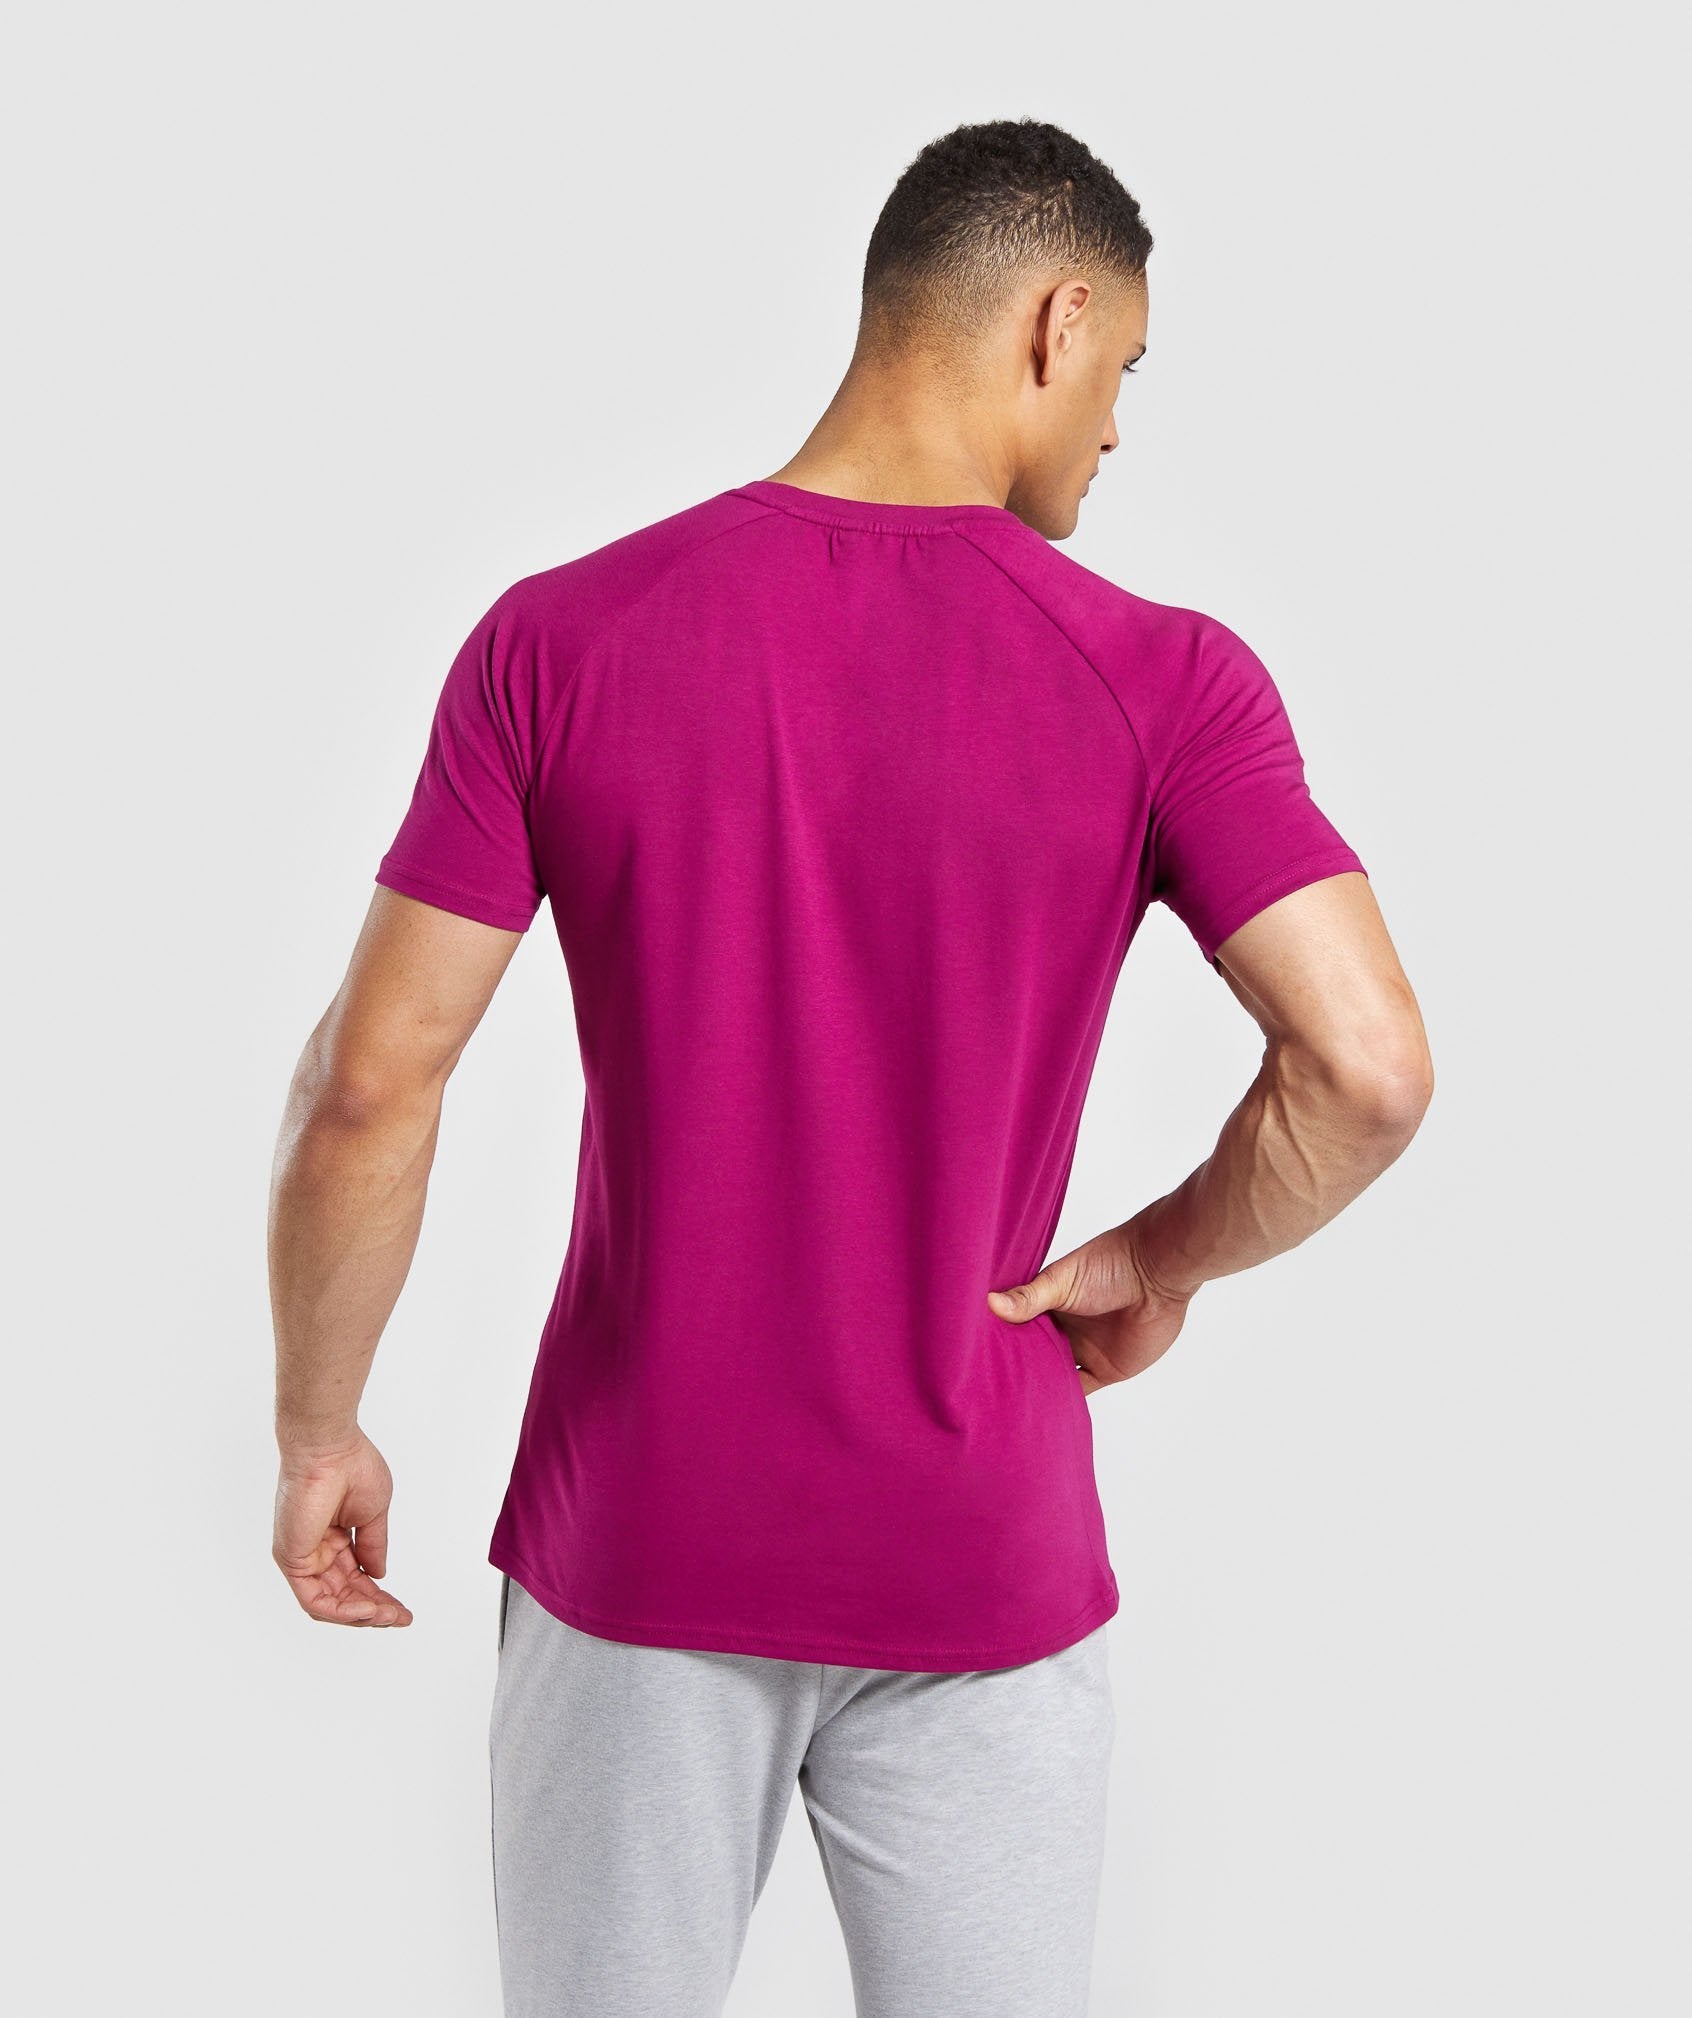 Apollo T-Shirt in Purple - view 2